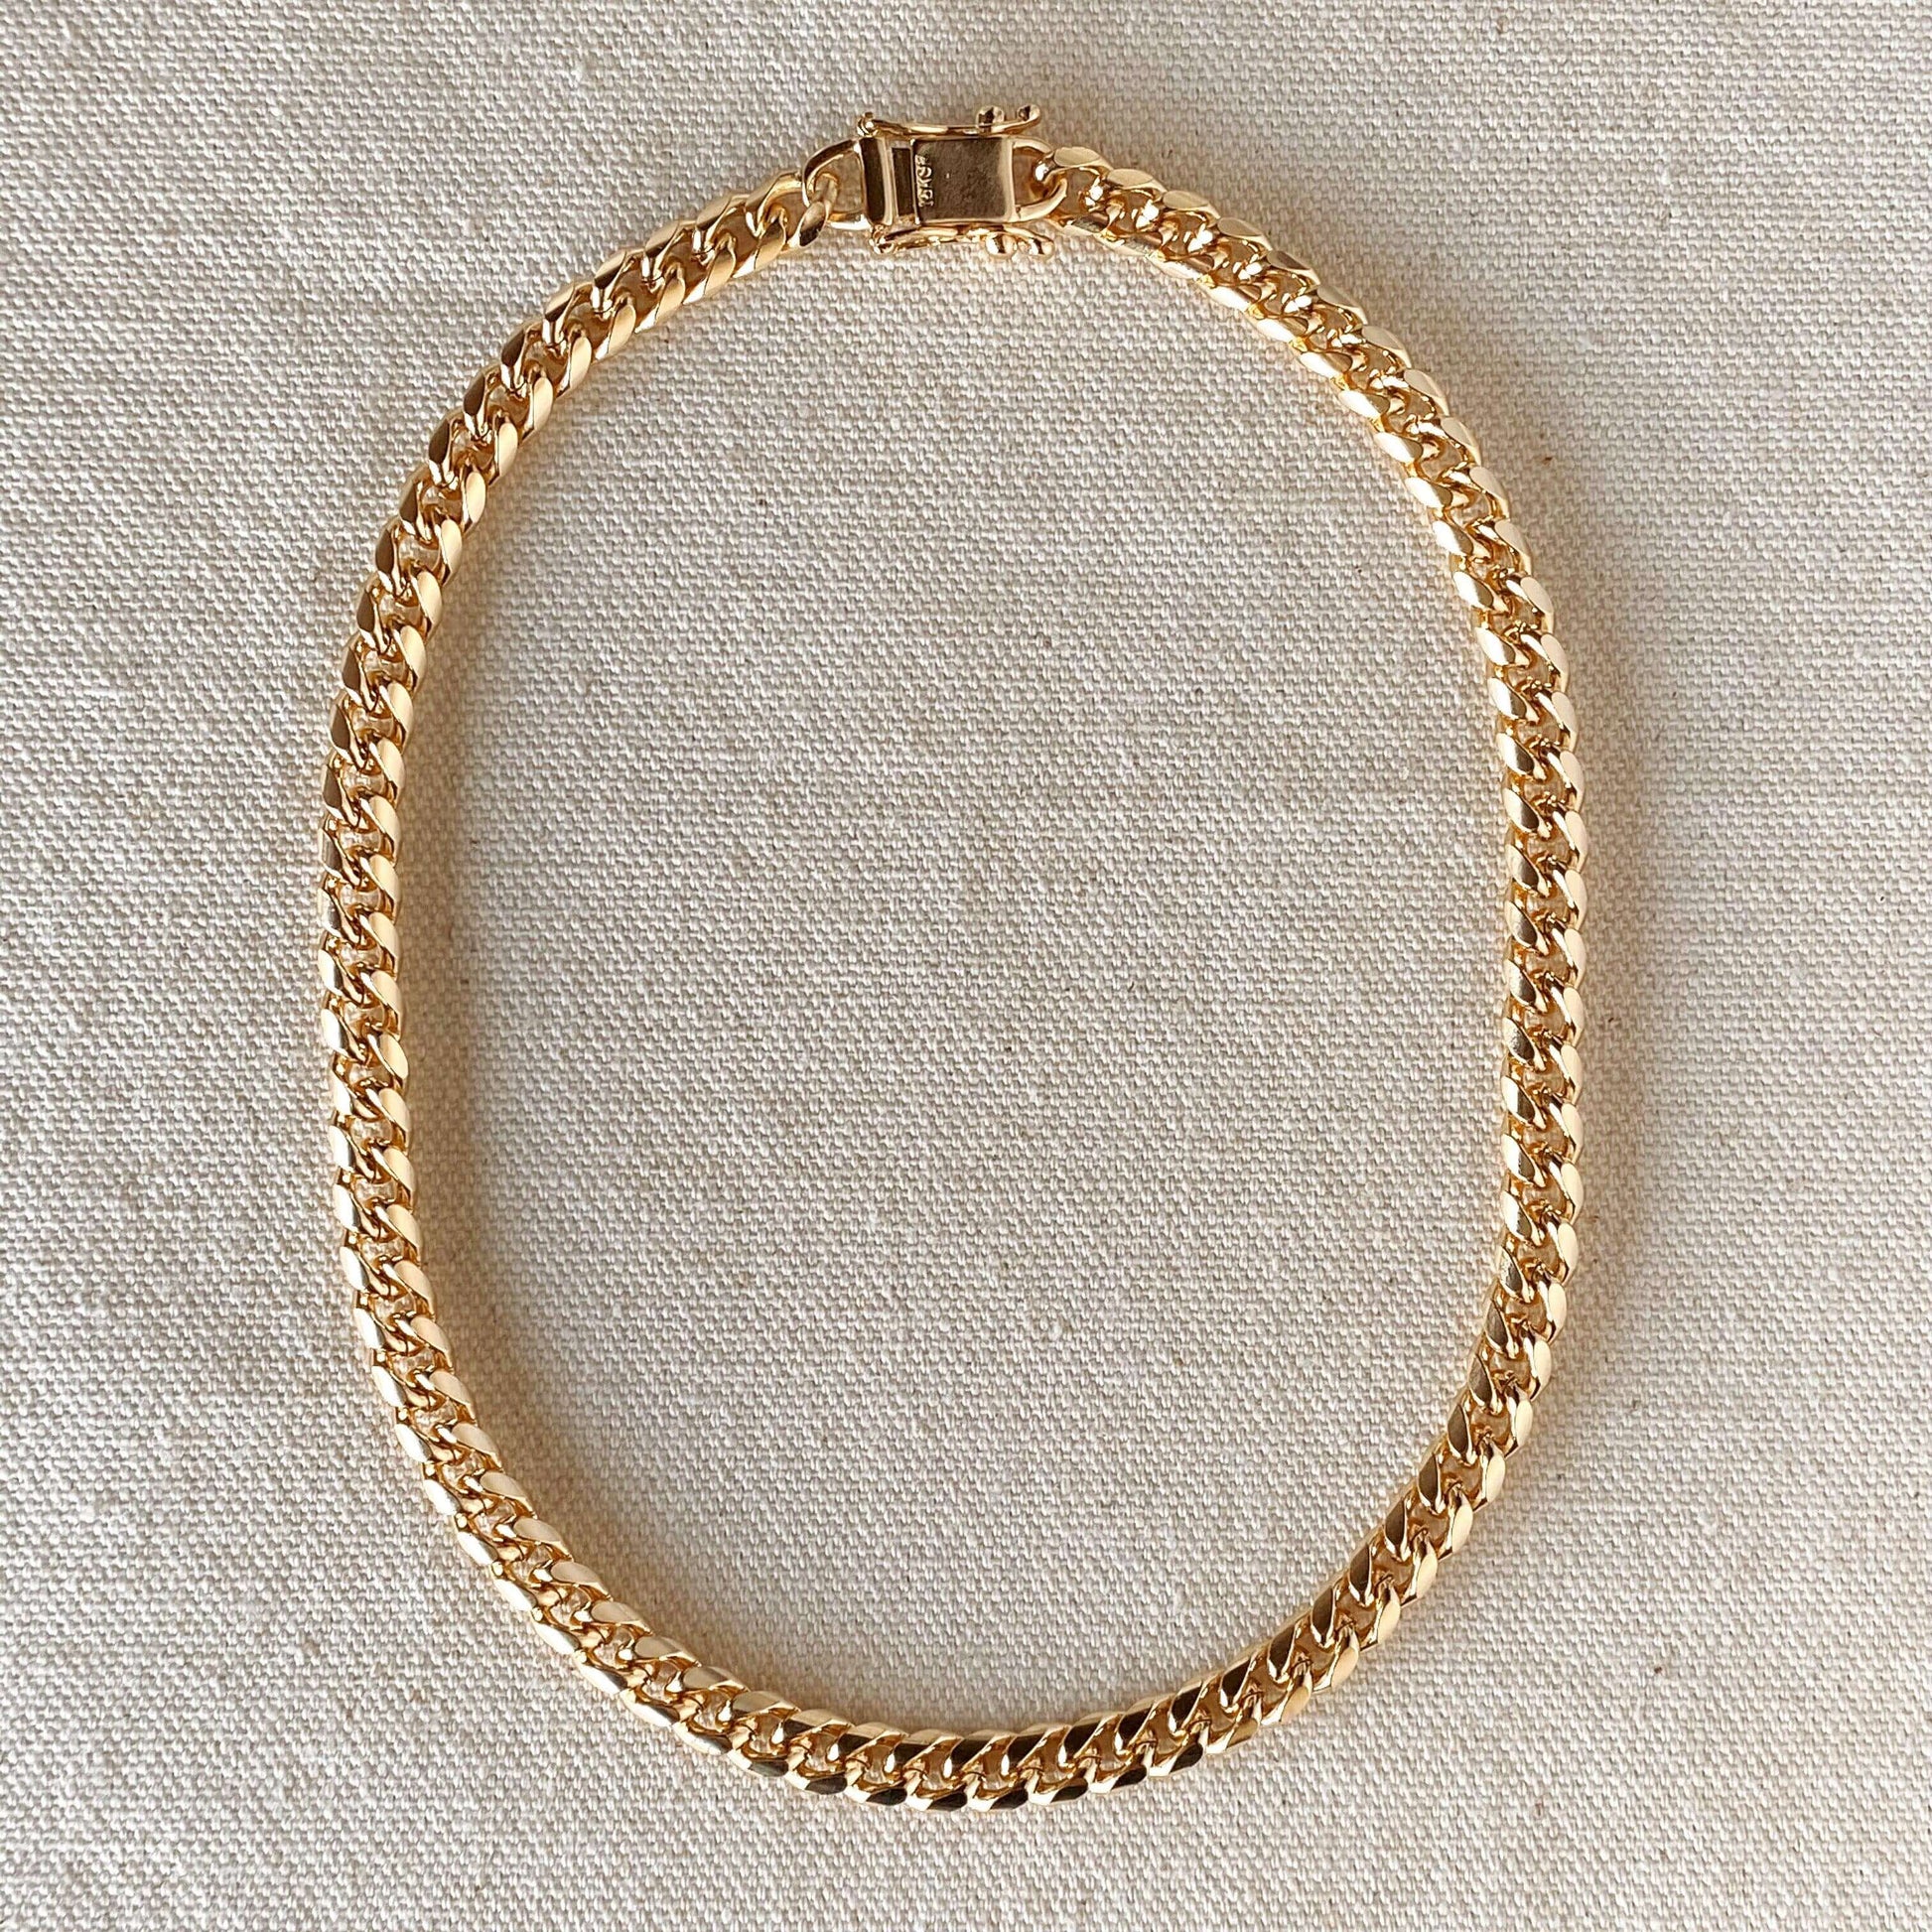 GOLD Filled Lock Pendant Necklace Lock Earrings SET WATERPROOF 